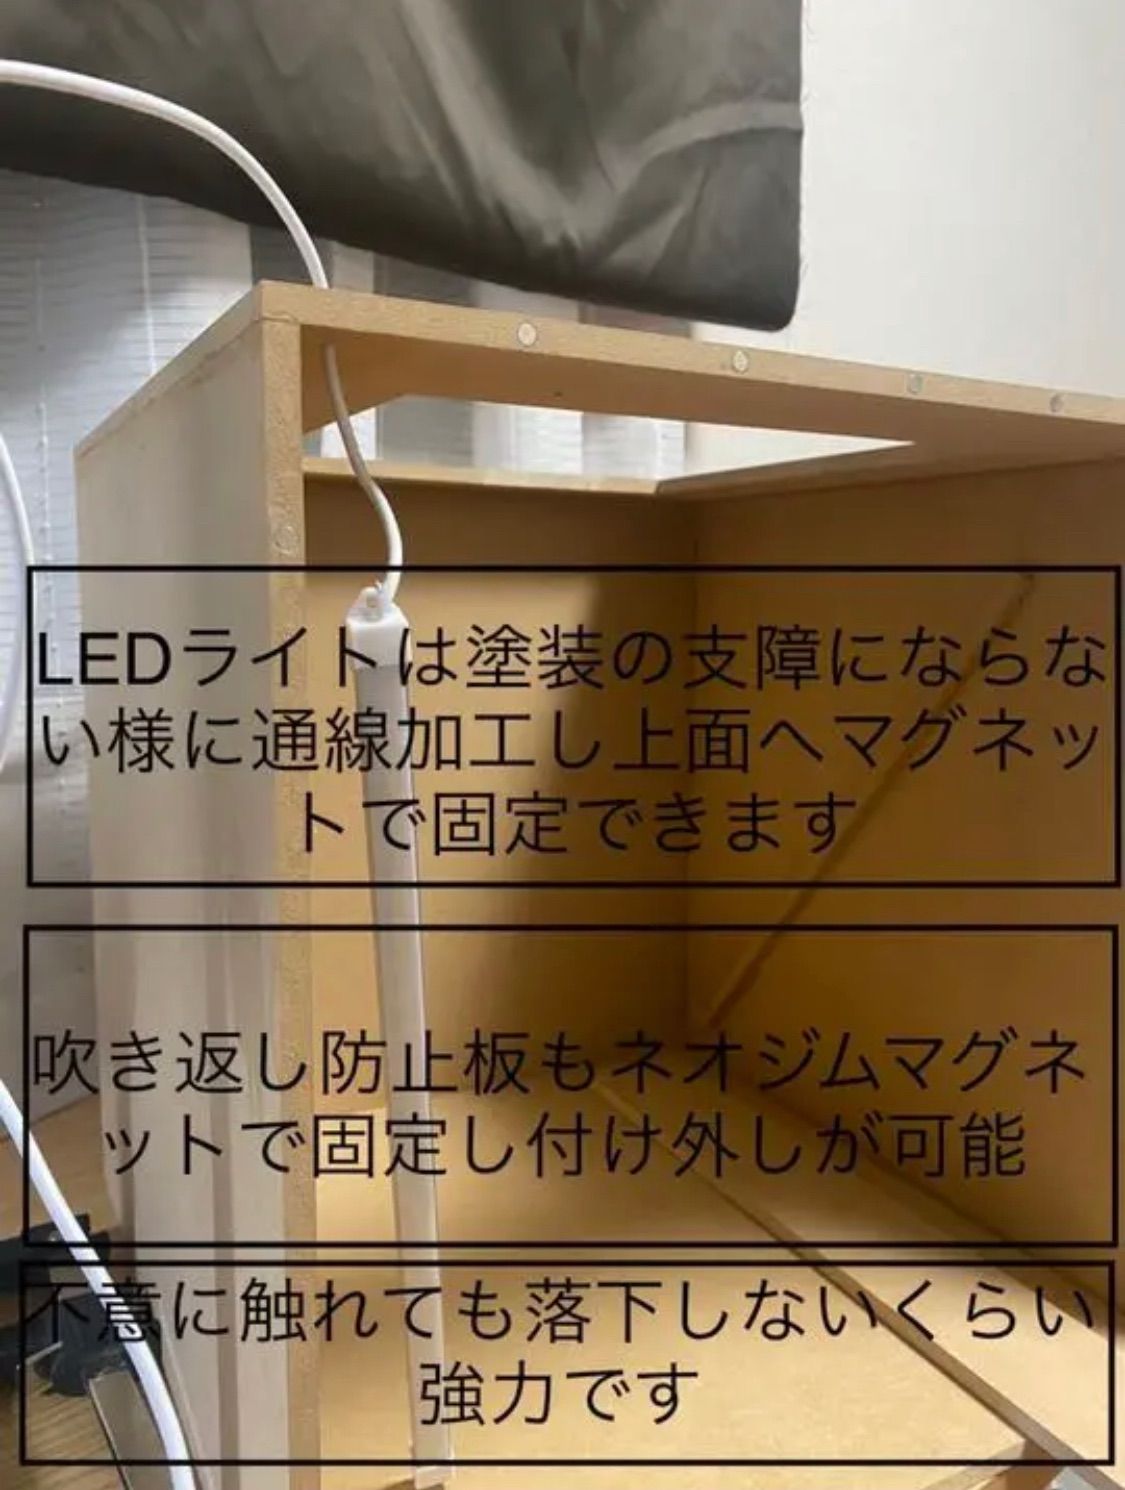 塗装ブース 静音 大風量 220/h 34.5db LED 防汚タイプ - Artaku - メルカリ